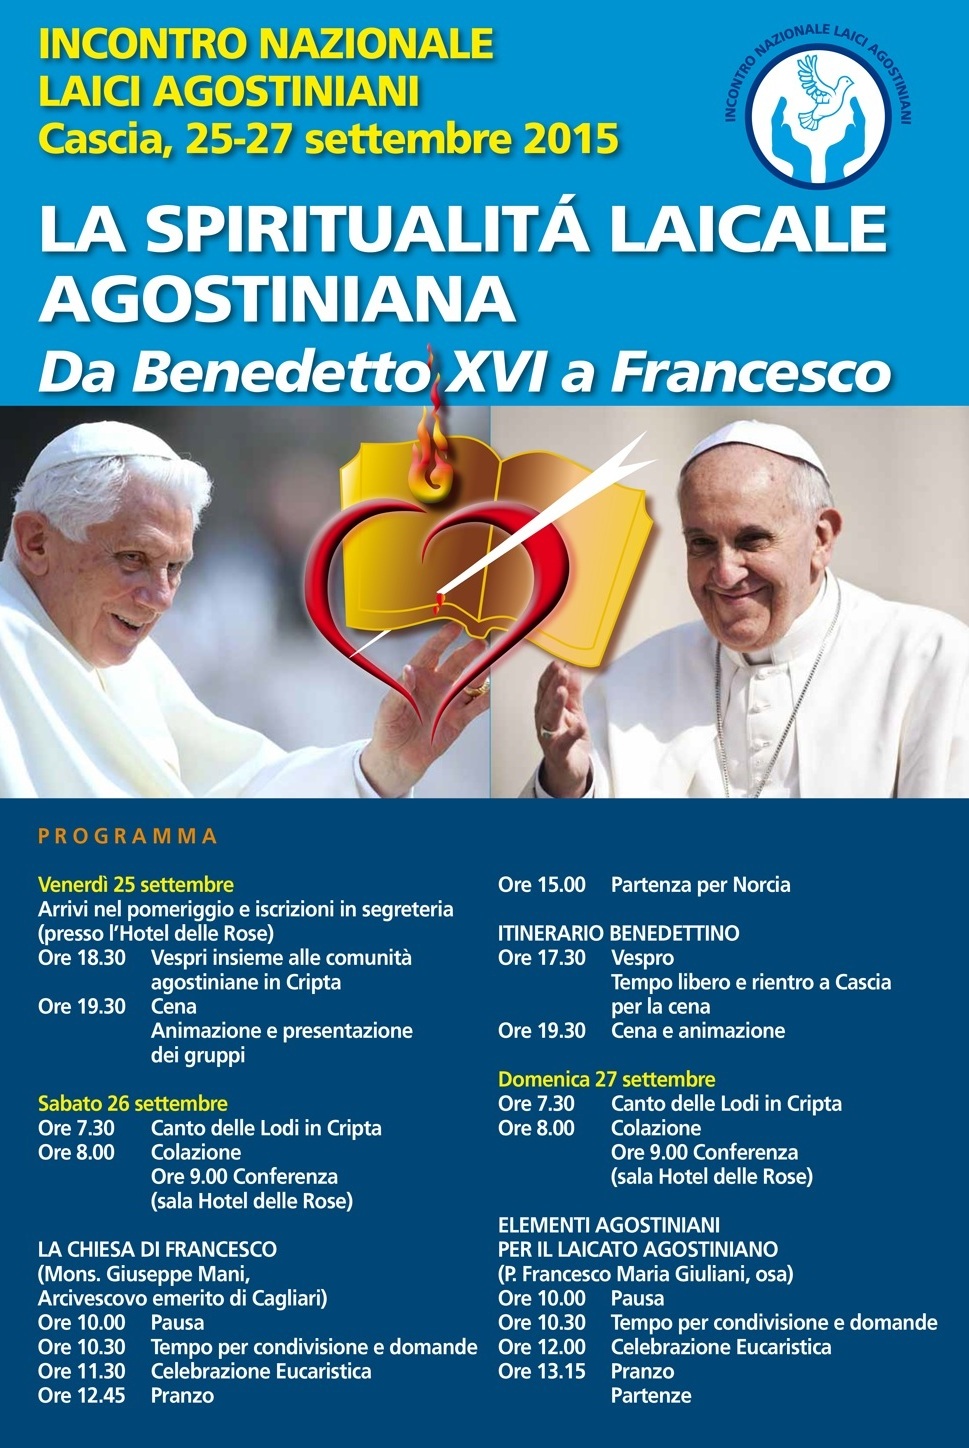 Il programma-manifesto dell'incontro di Cascia delle Fraternit dei Laici Agostiniani d'Italia